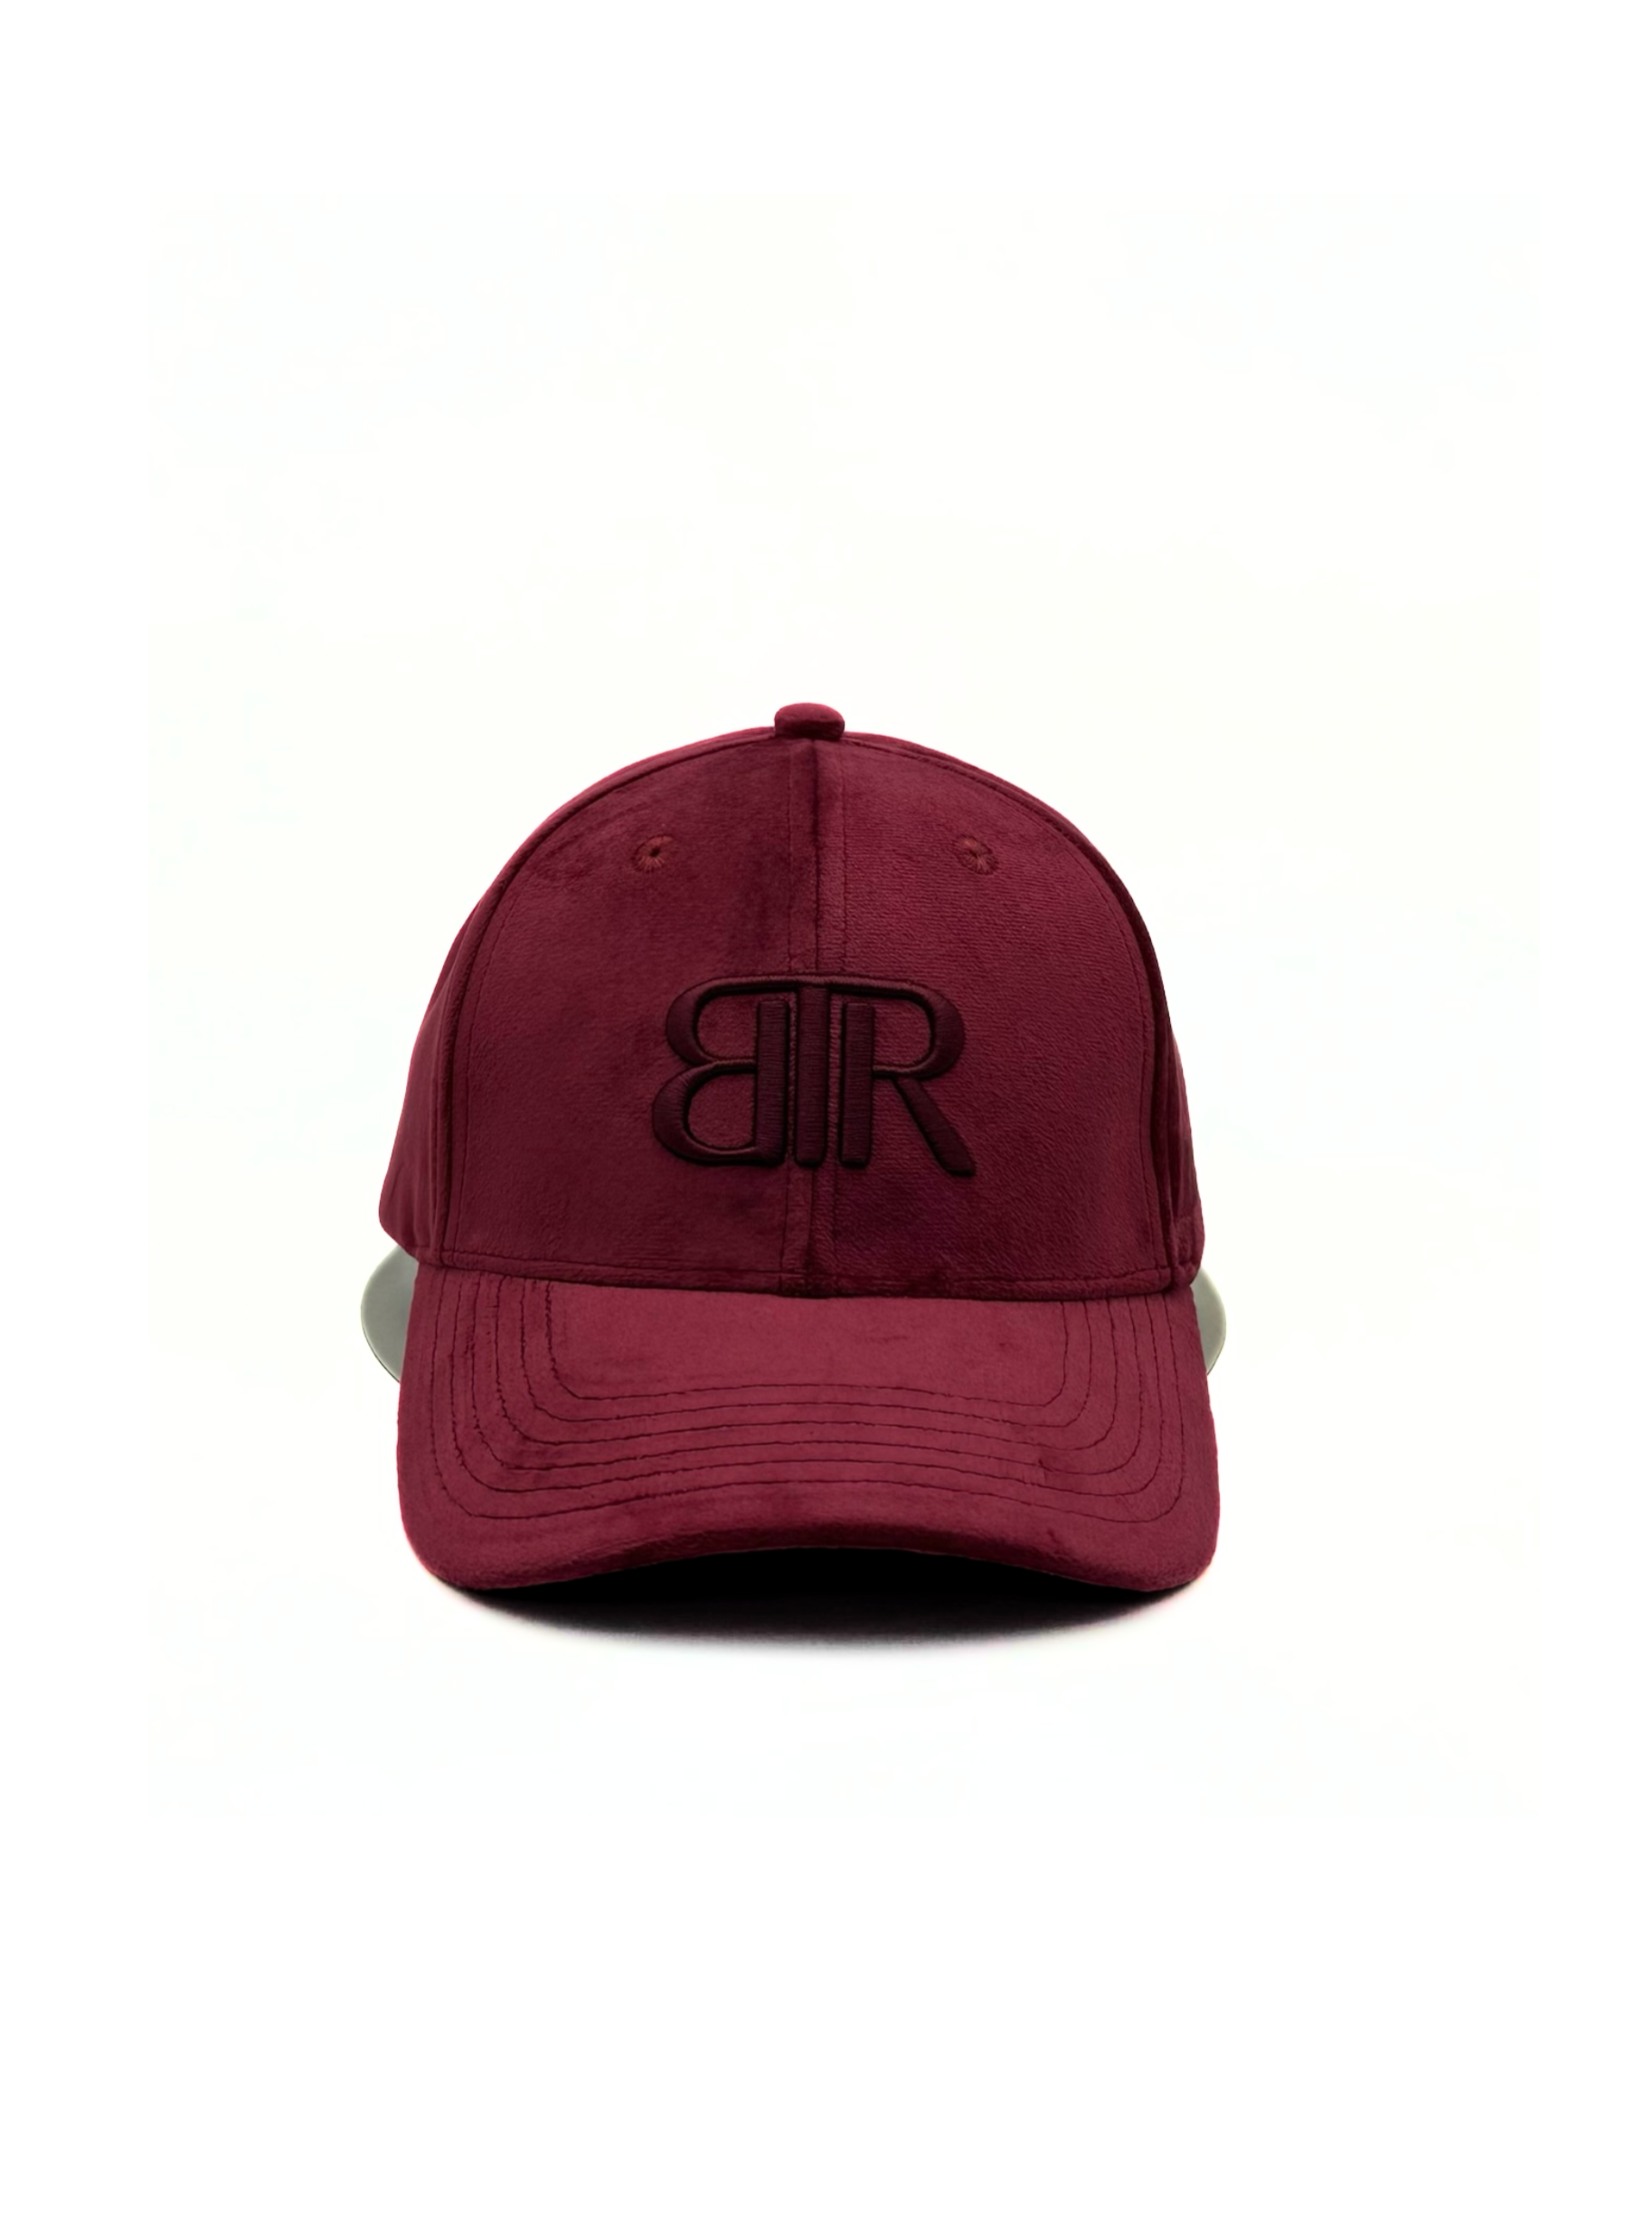 stylish burgundy bronx velvet baseball cap